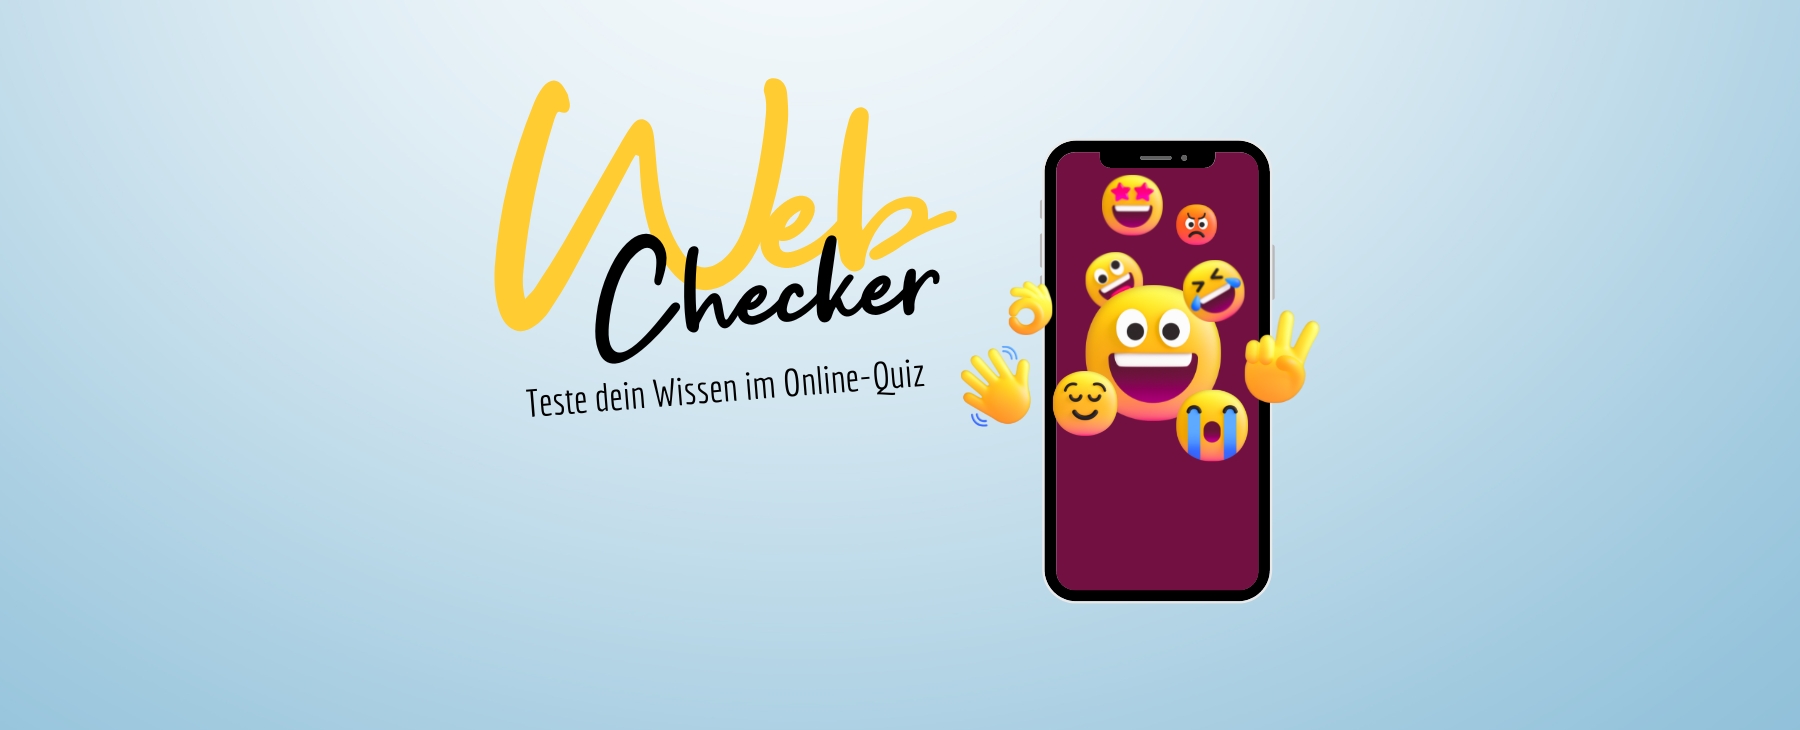 WebChecker Smartphone und Emojis